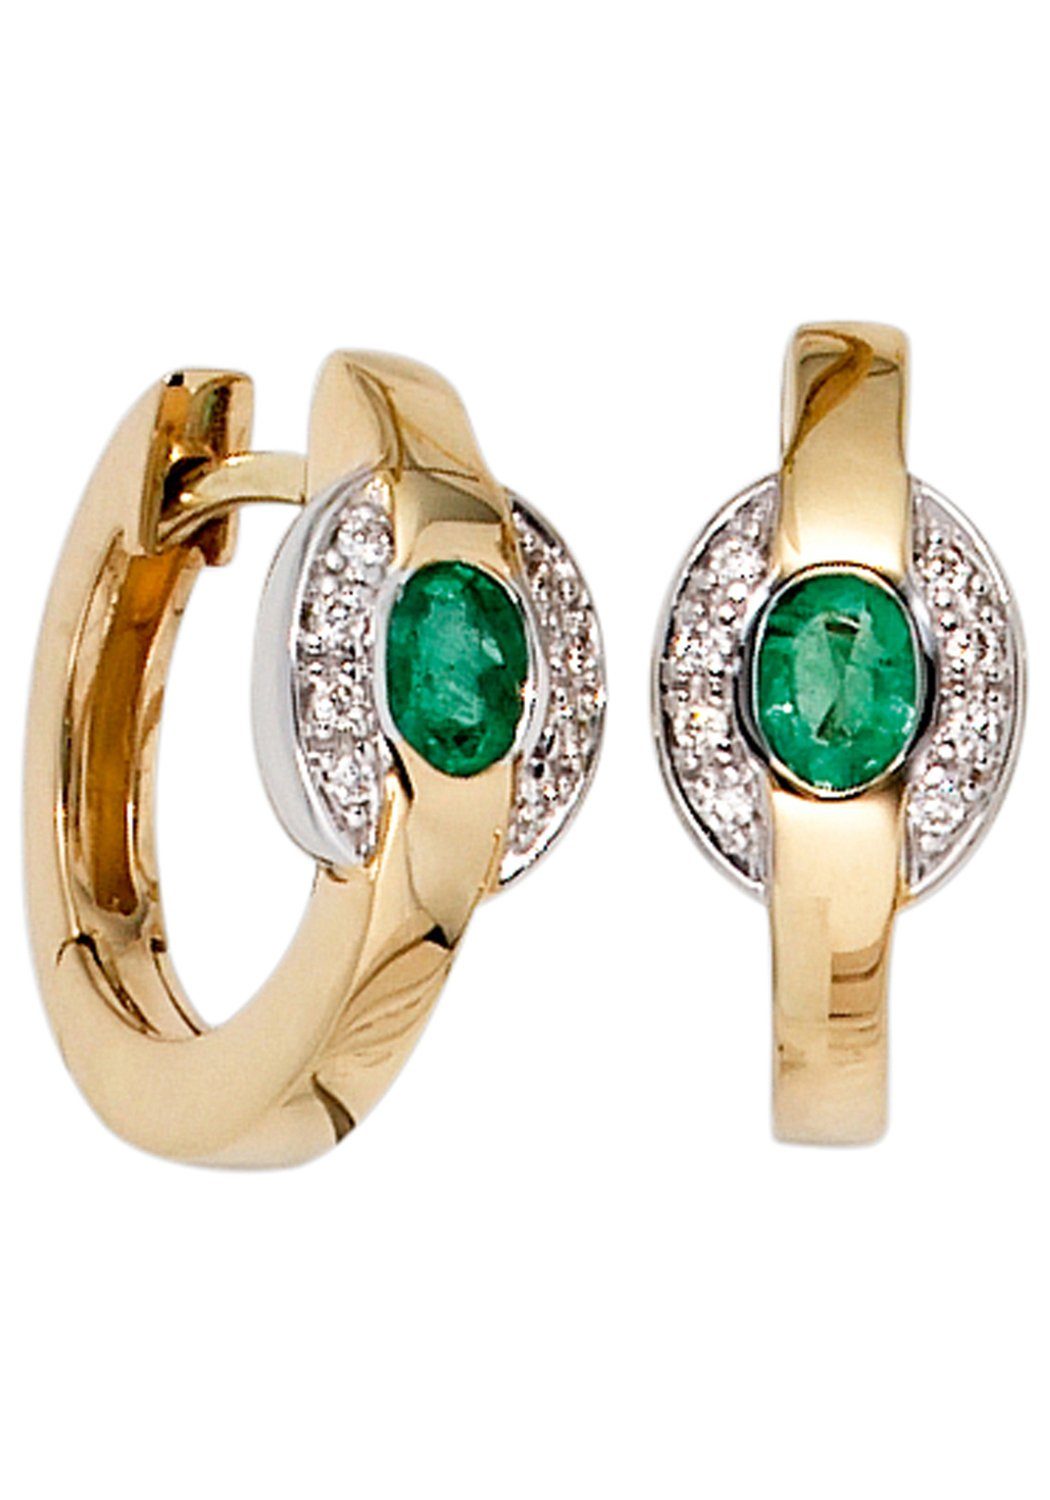 16 Smaragd Gold 585 mit JOBO Creolen, und Paar bicolor Diamanten